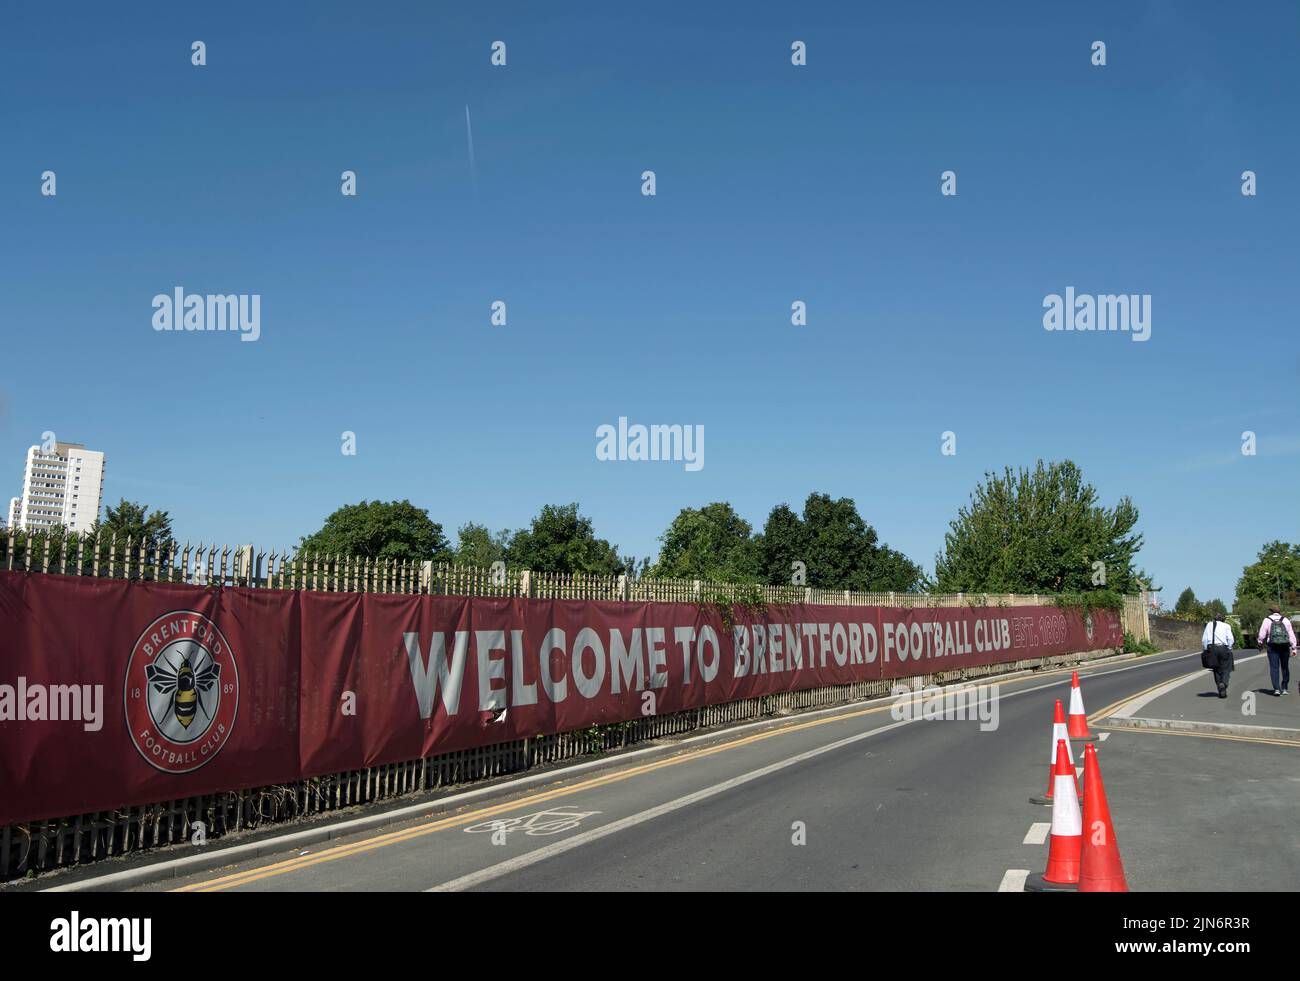 Willkommen beim banner des fußballvereins brentford vor dem Vereinsgelände, das derzeit als gtech-Community-Stadion im Westen londons, england, bezeichnet wird Stockfoto